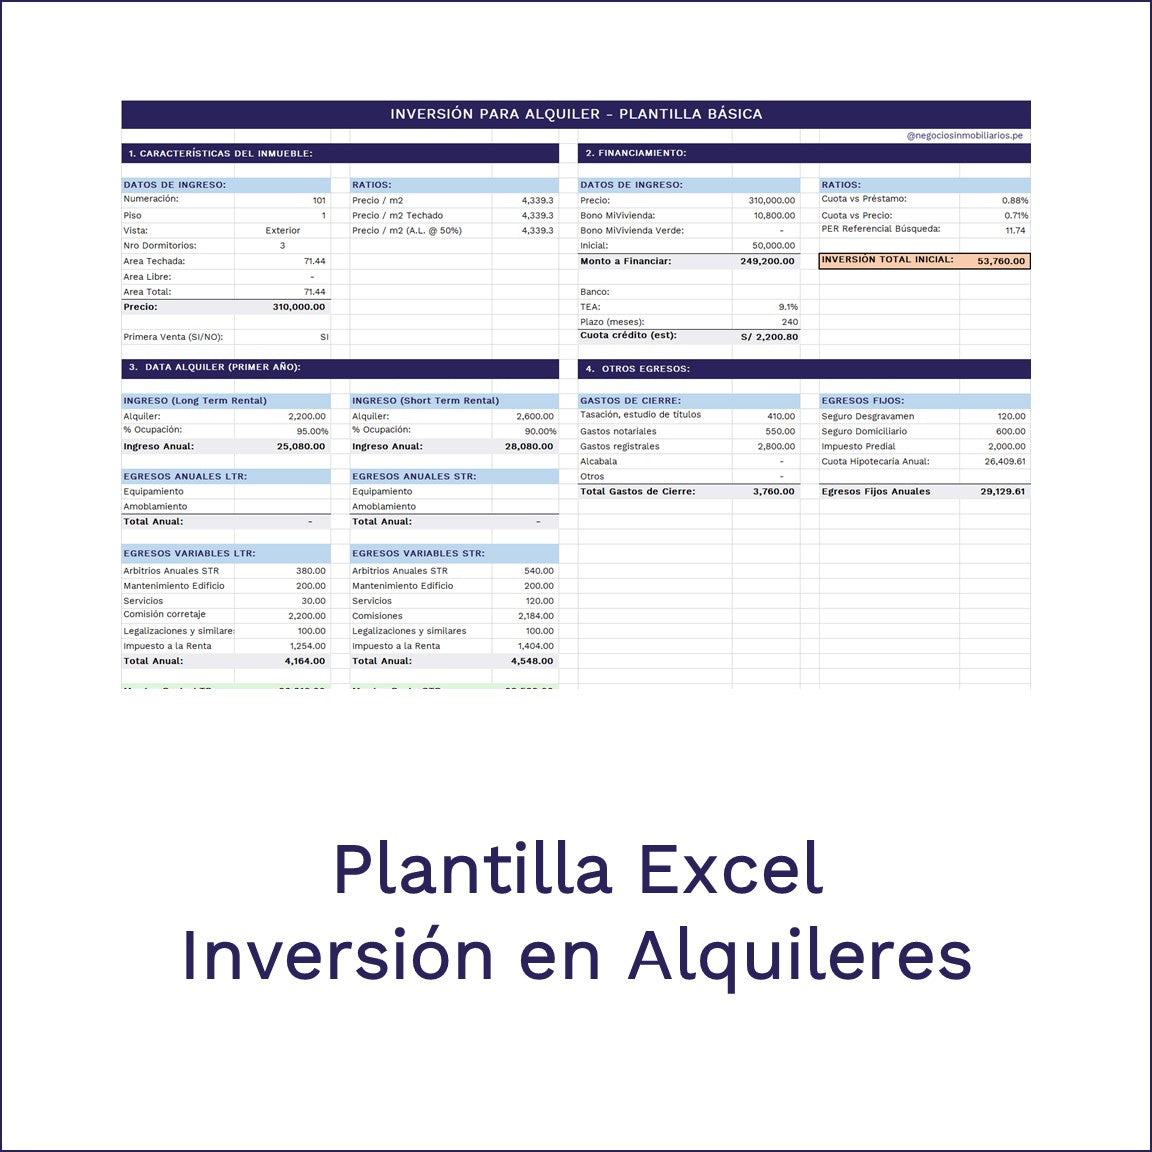 Plantilla Evaluacion Inversion para Alquiler